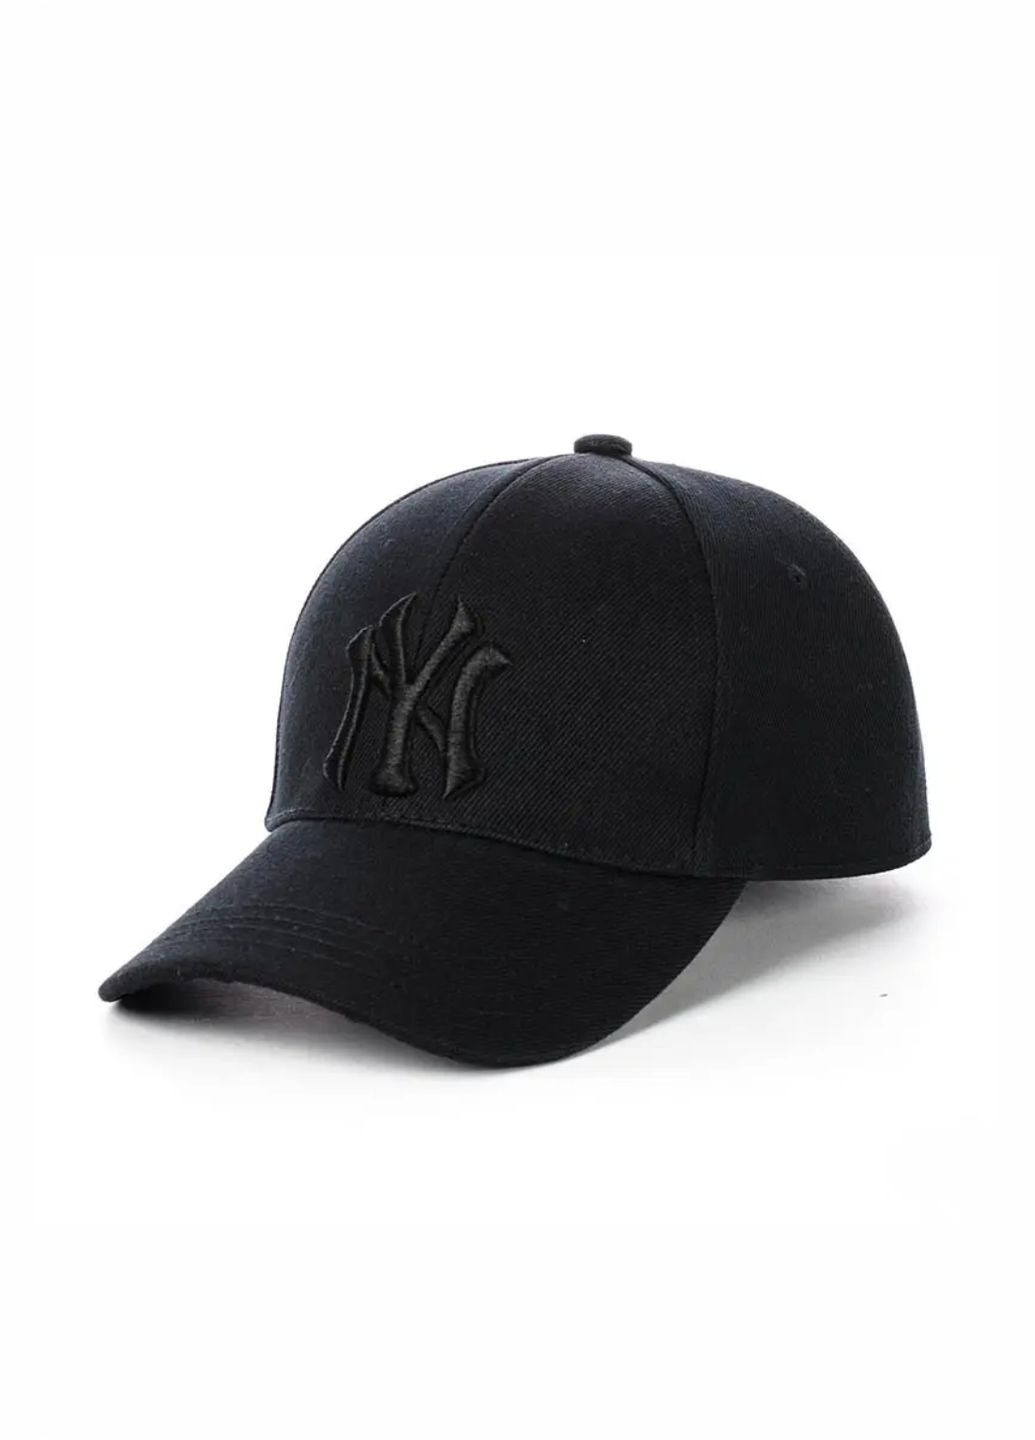 Молодежная кепка Нью Йорк / New York S/M No Brand кепка унісекс (278649837)